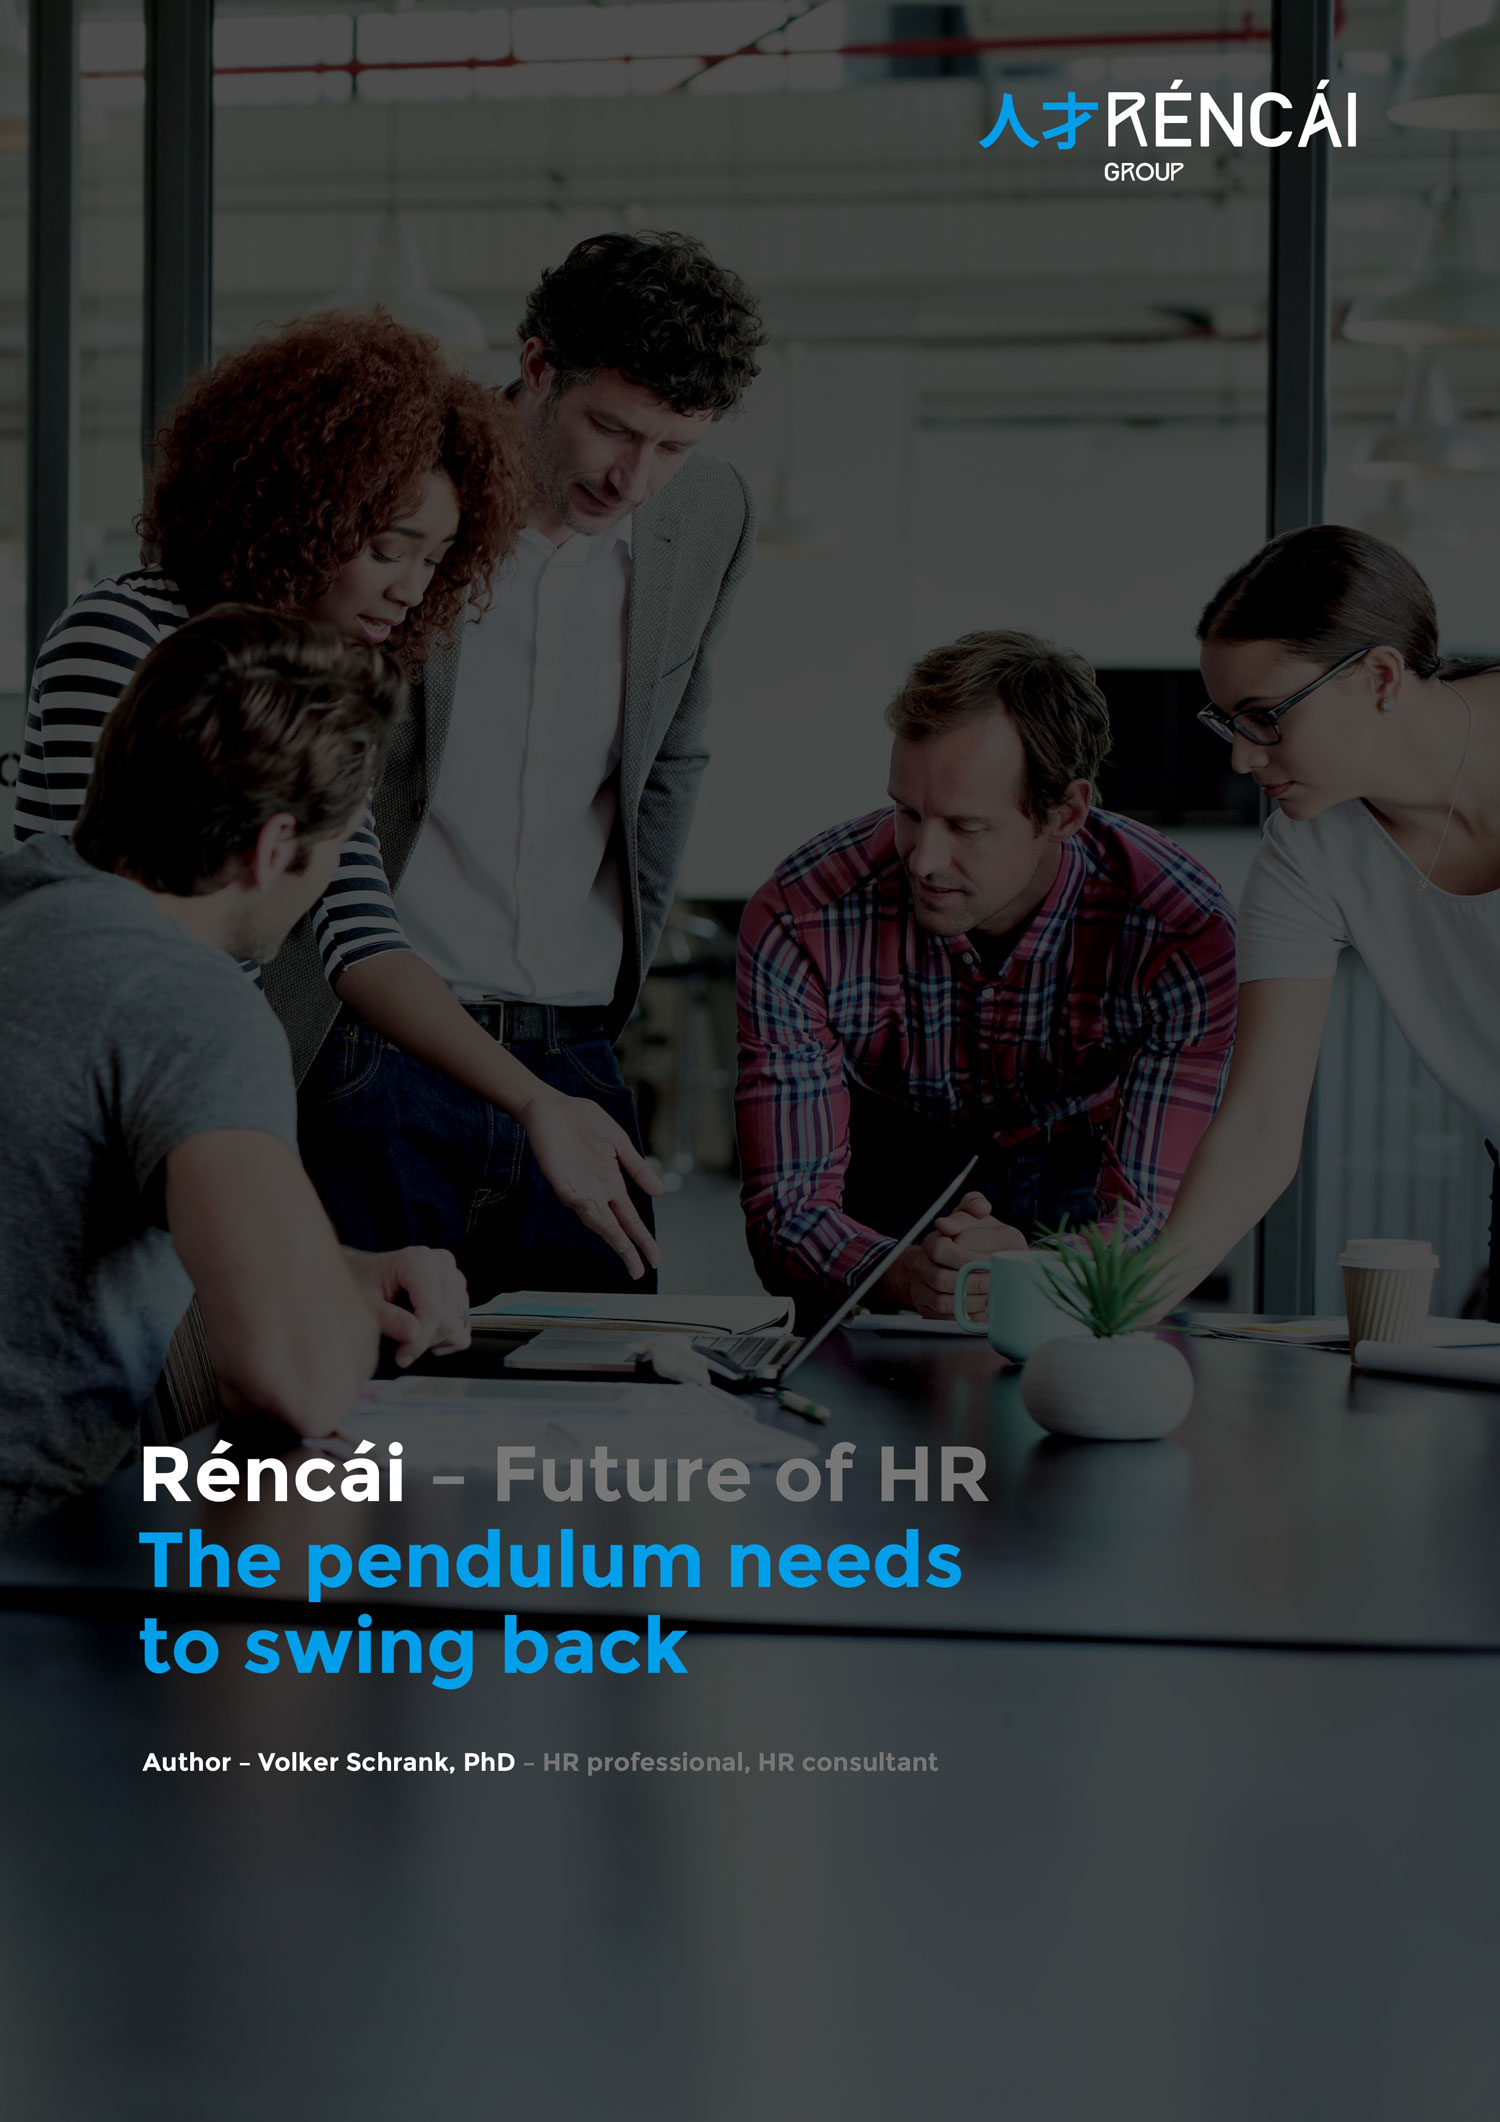 Rencai paper - future of HR